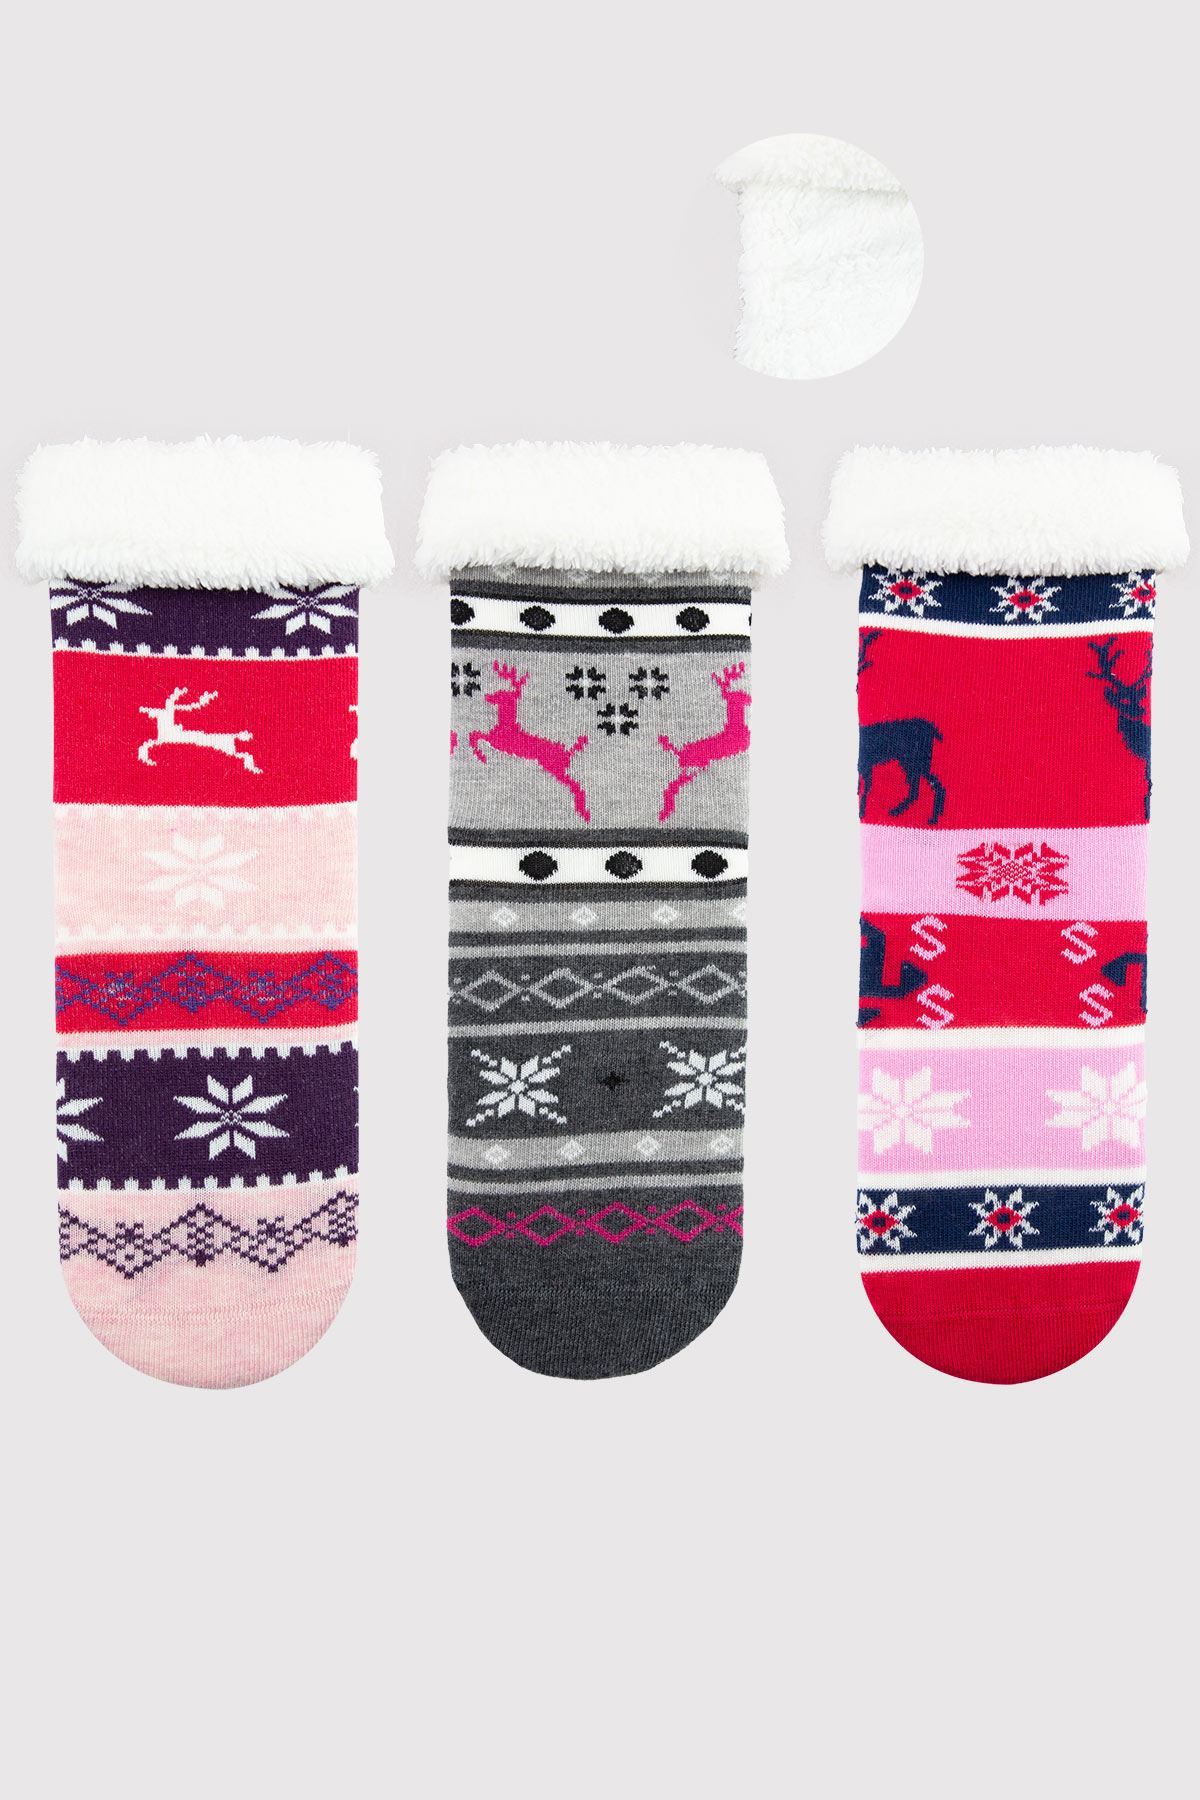 FURRY KIDS SOCKET | Buy Branded Wholesale Socks Online At Bulkybross.Com!